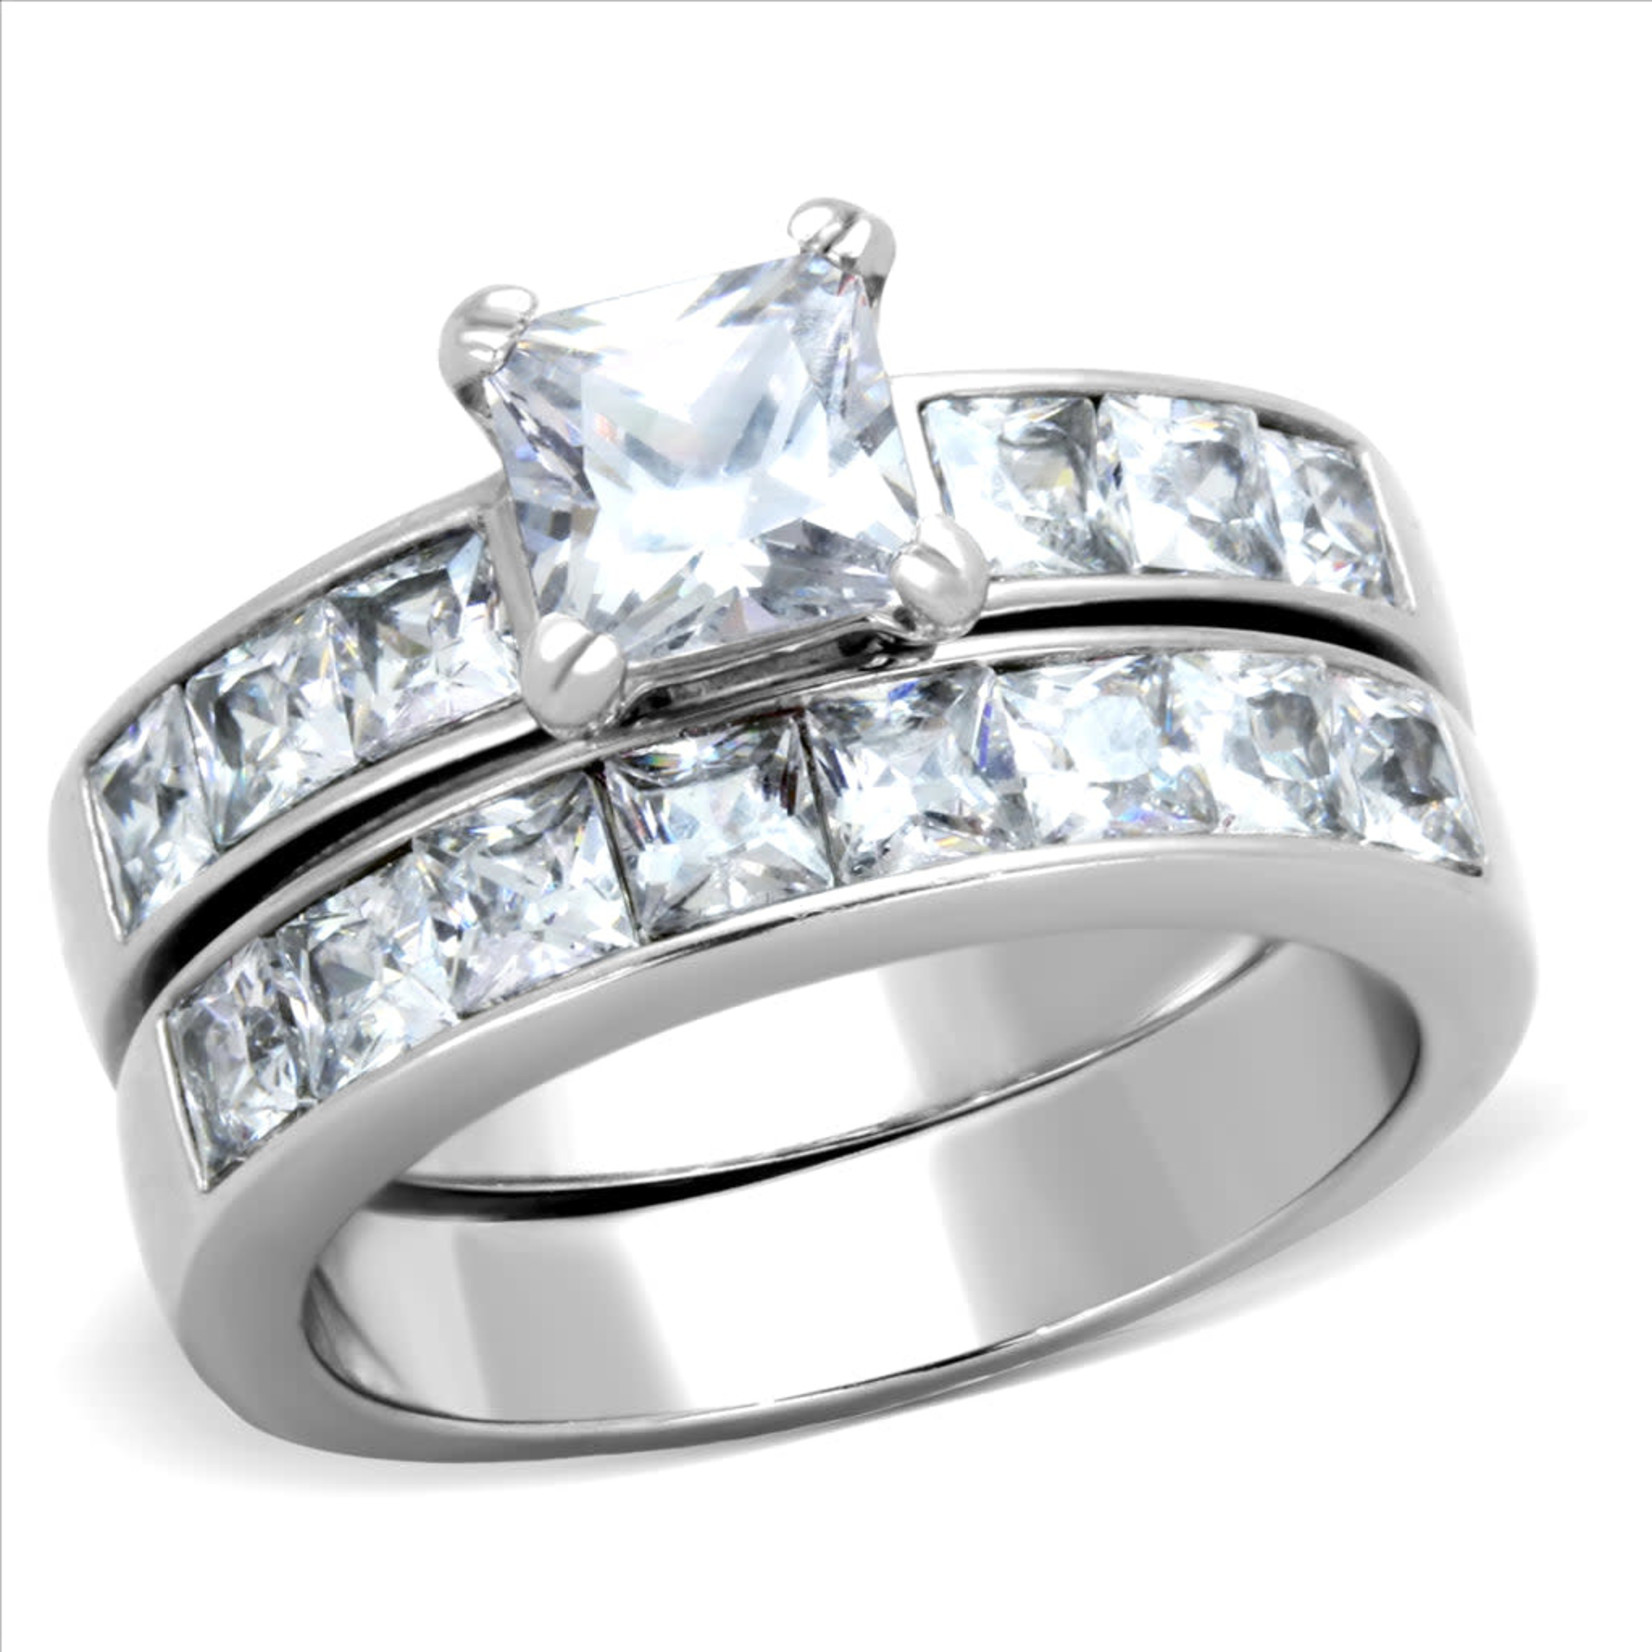 ROS Ornate Wedding Ring Set